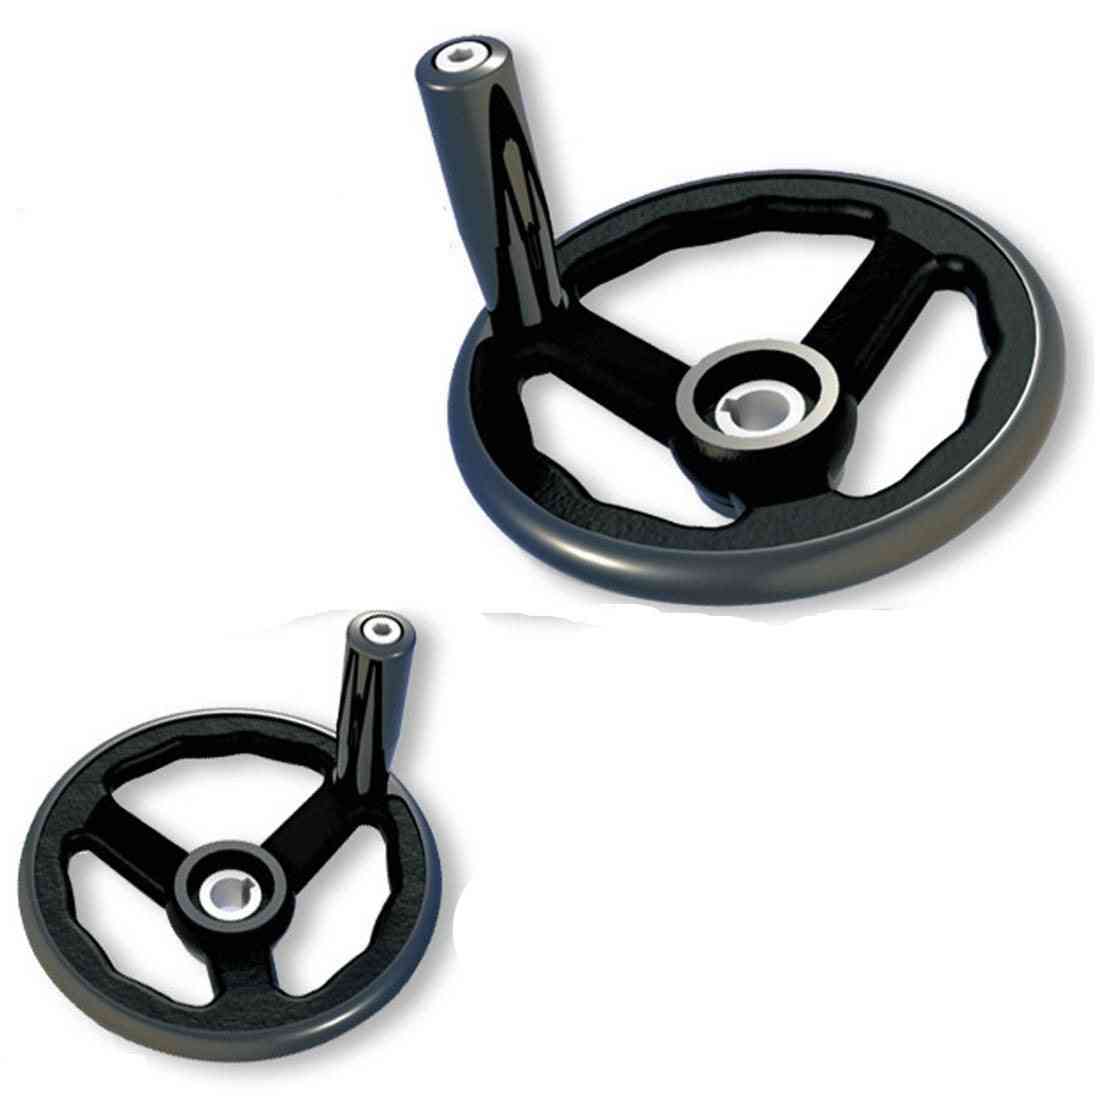 Machine Tool Accessories Nylon Round Rim Hand Wheel